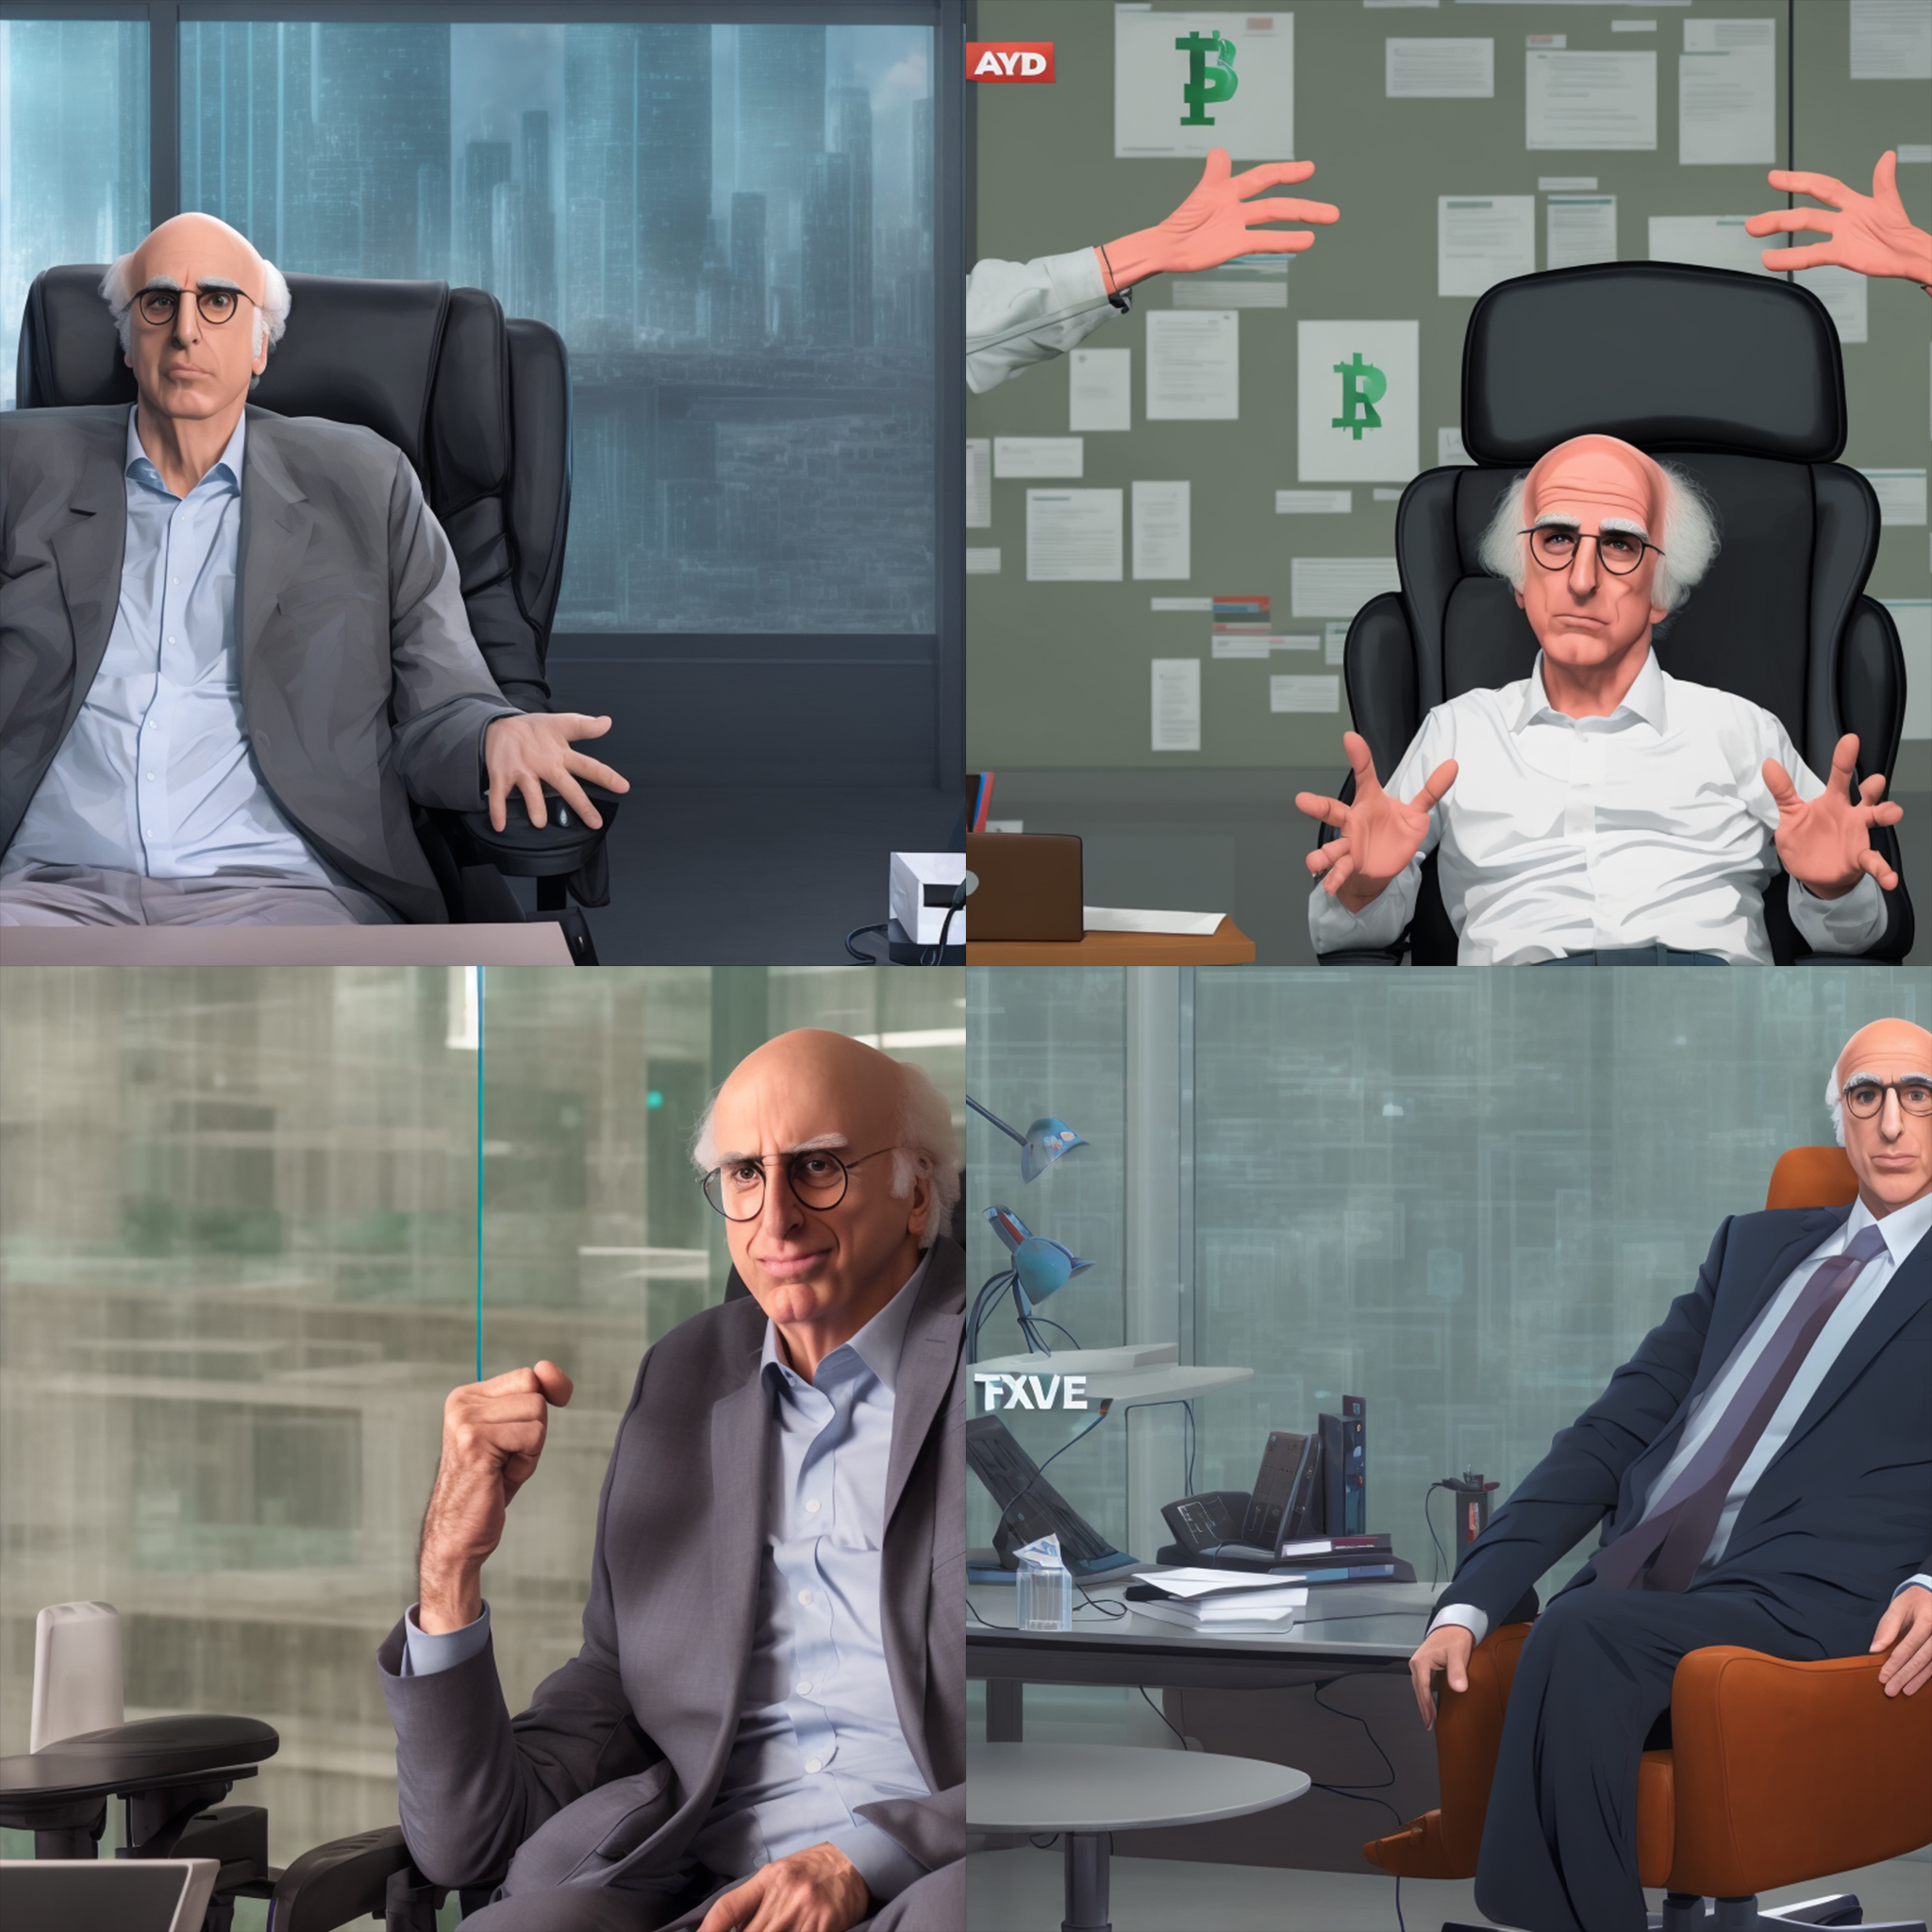 Imagens geradas por IA de Larry David sentado em uma cadeira de escritório.